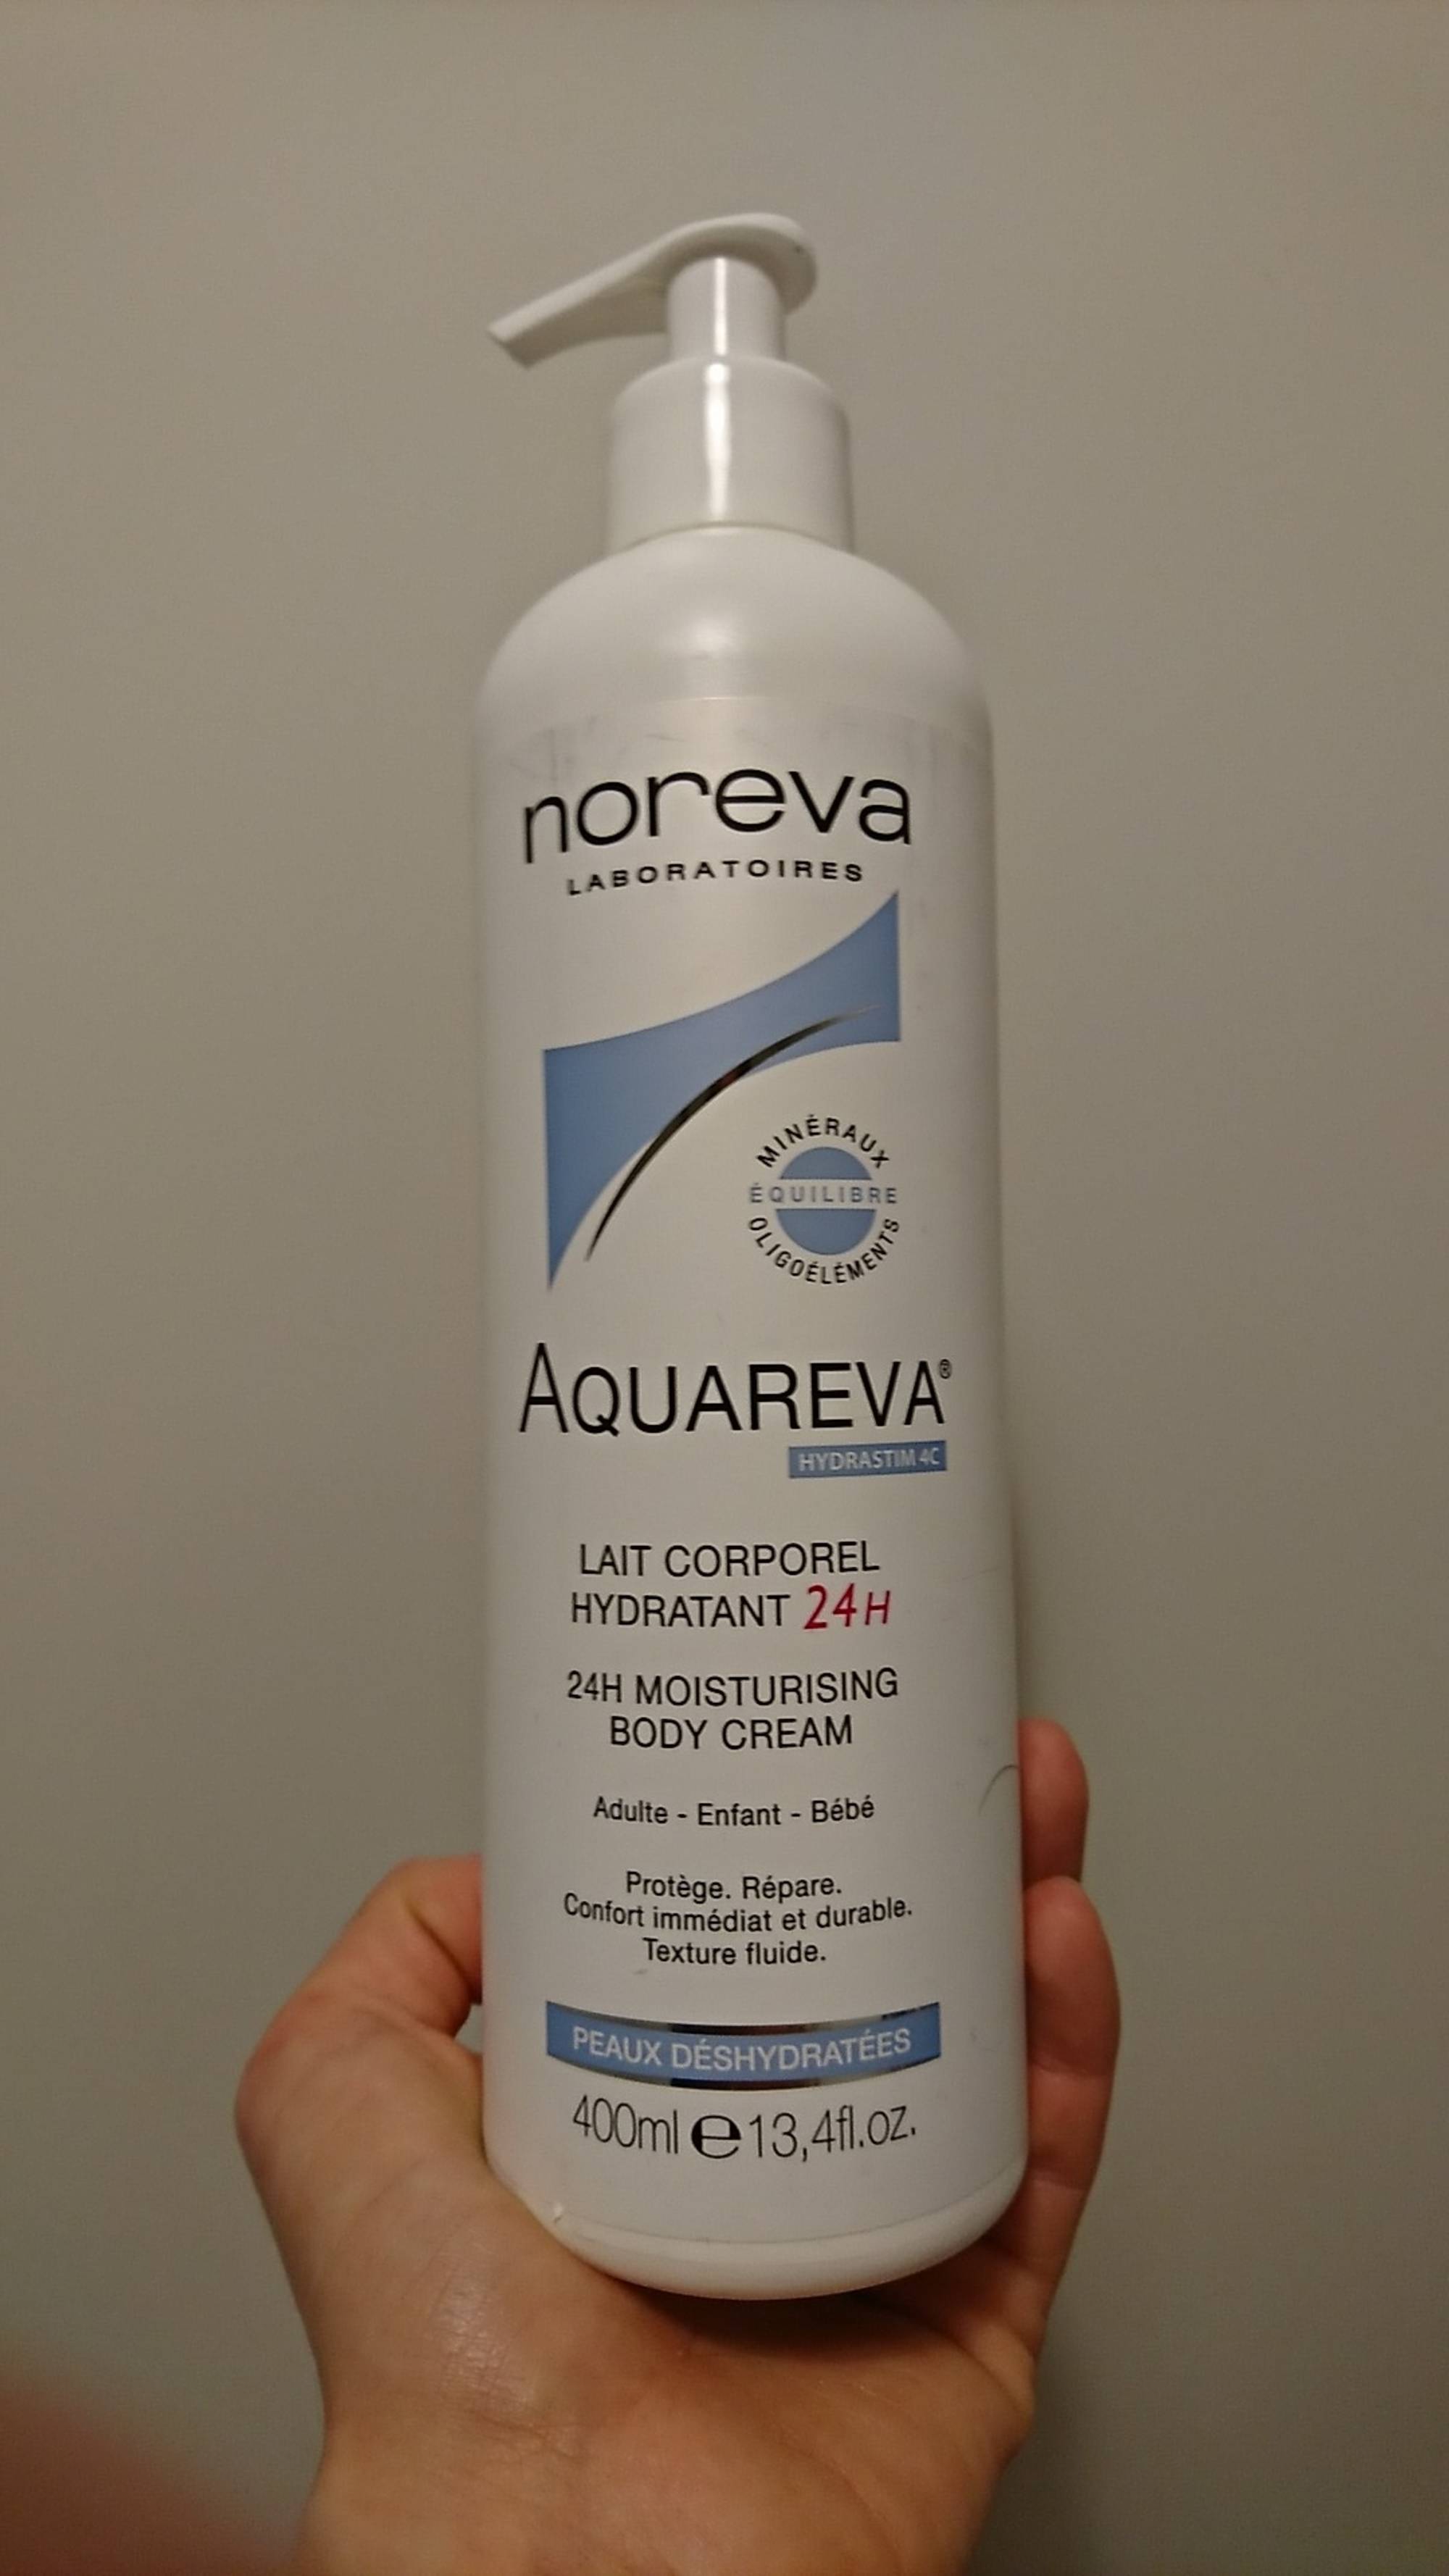 NOREVA LABORATOIRES - Aquareva - Lait corporel hydratant 24h